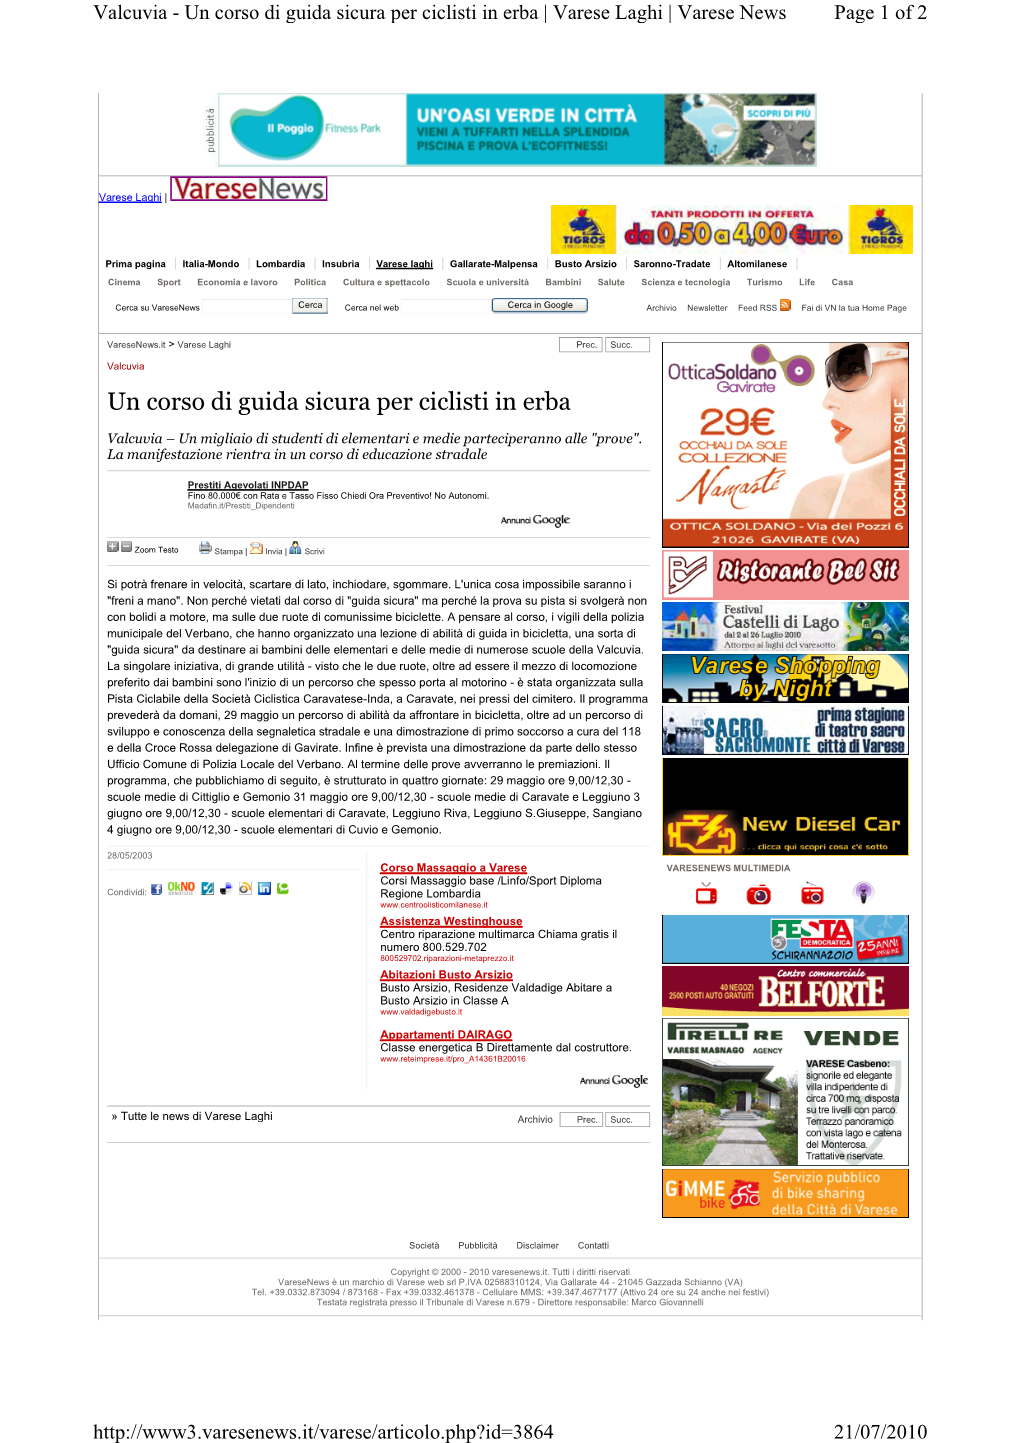 Un Corso Di Guida Sicura Per Ciclisti in Erba | Varese Laghi | Varese News Page 1 of 2